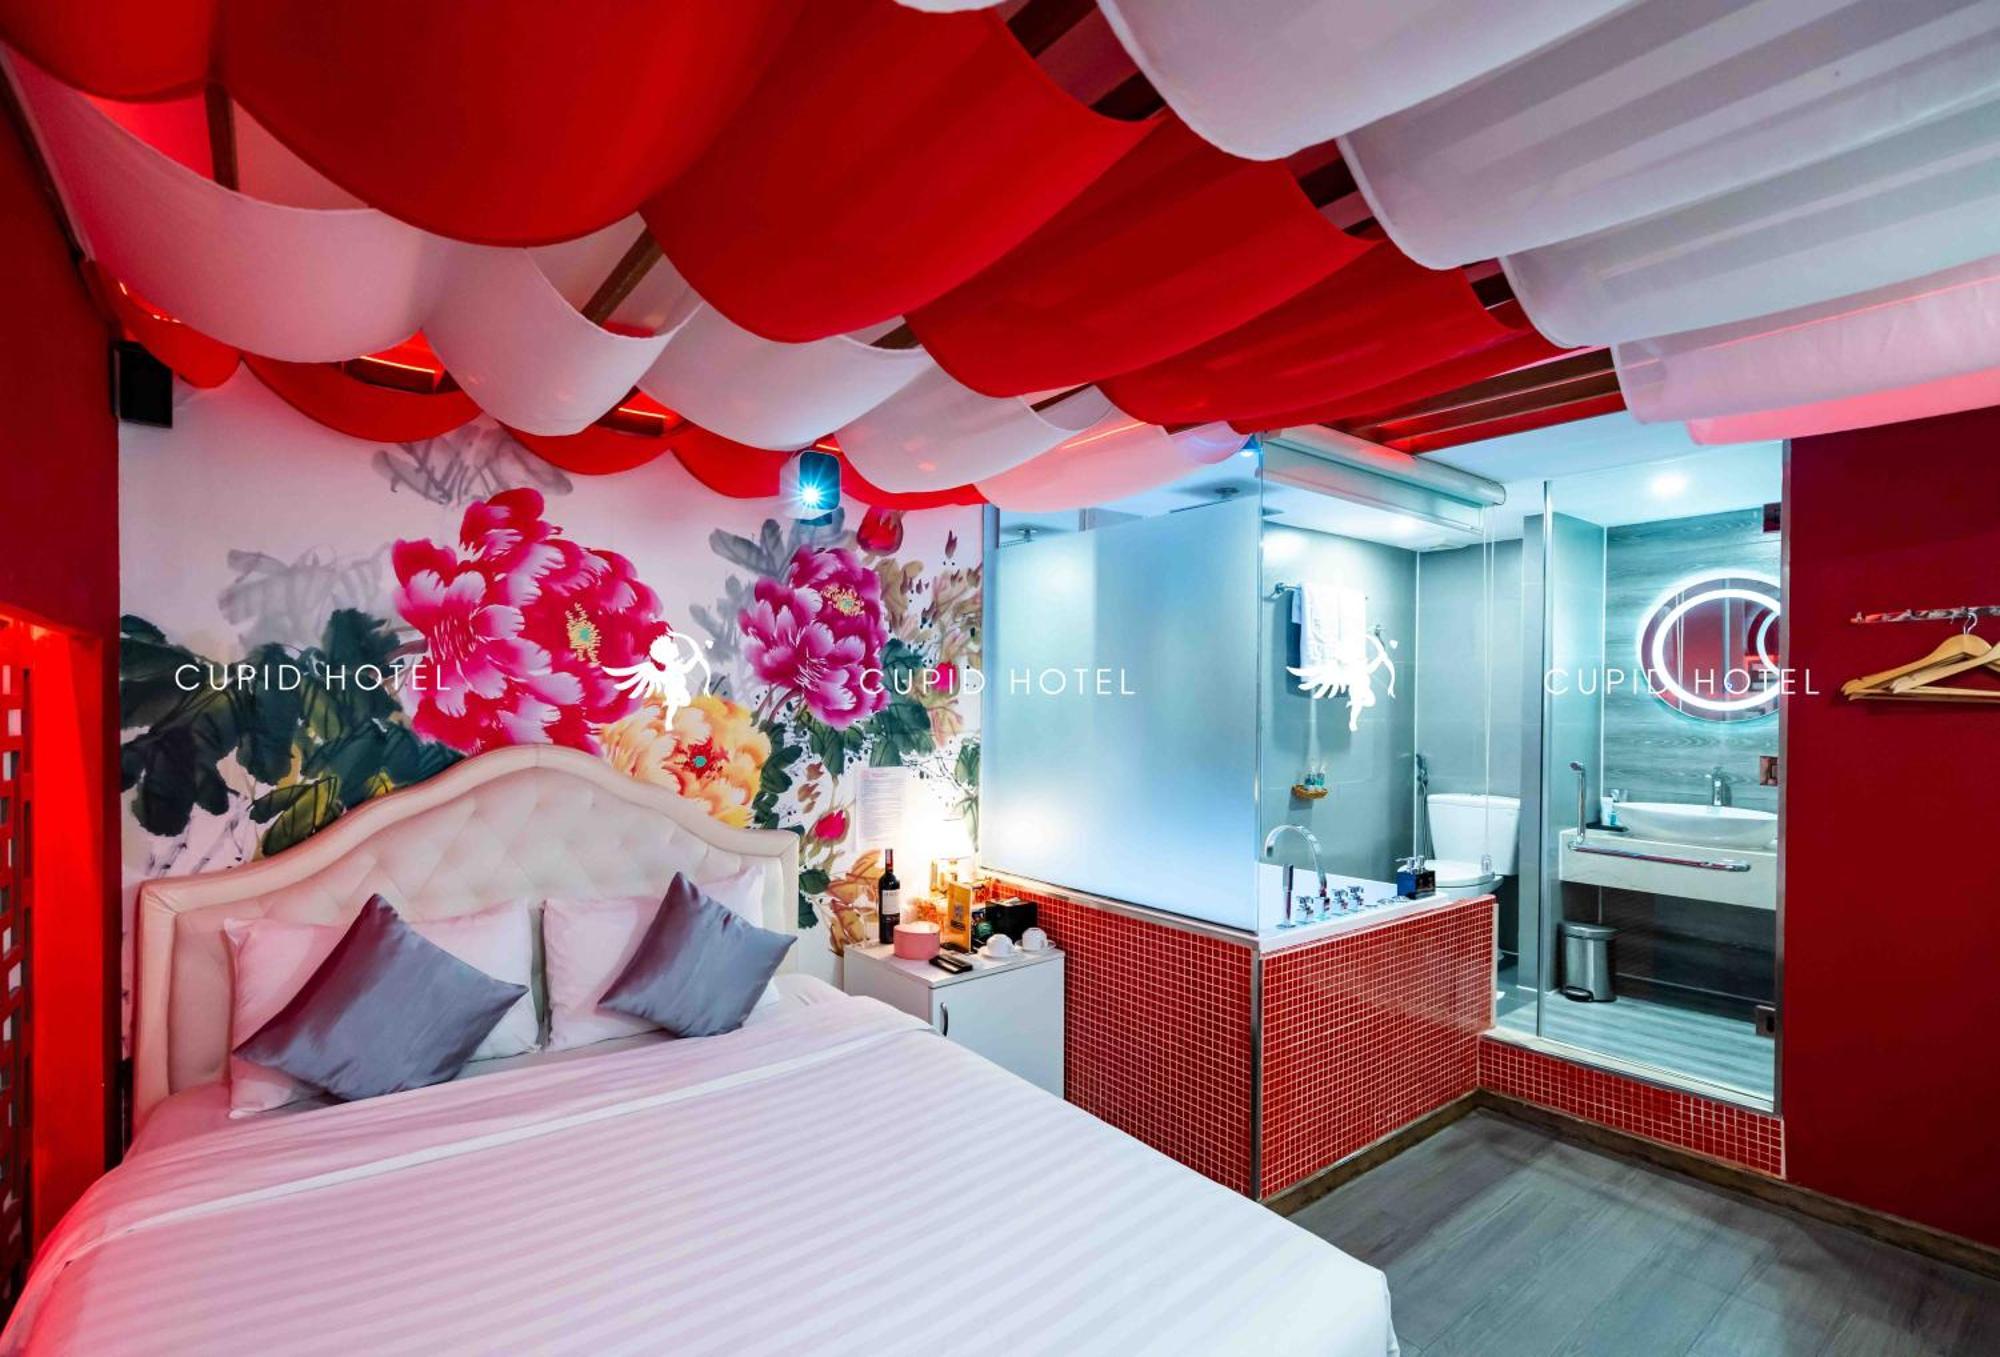 Cupid Hotel Ho Chi Minh City Room photo